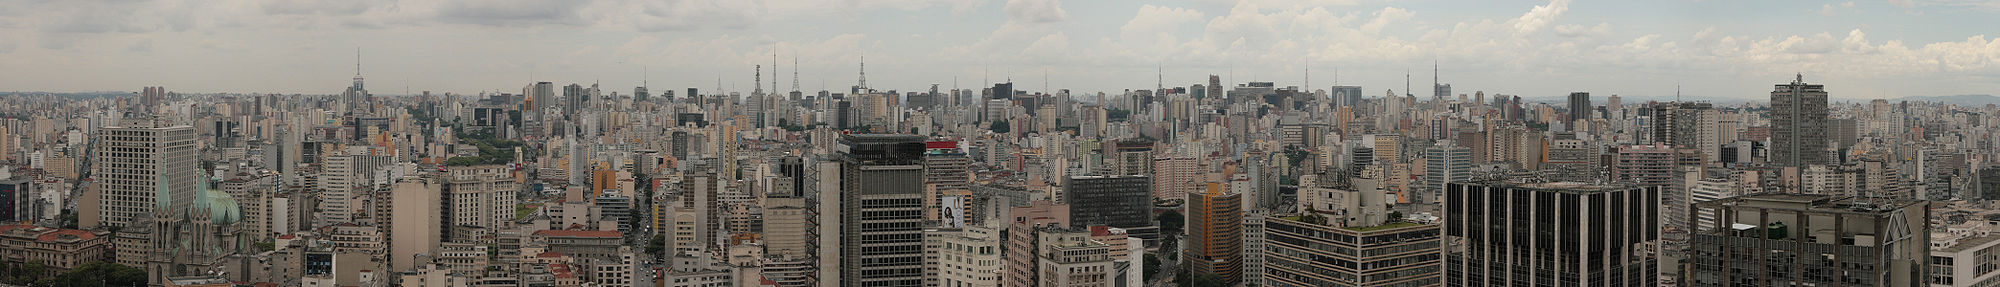 Vista panorámica de la parte sur de la Zona Central de São Paulo desde el mirador publico del Edificio Altino Arantes.